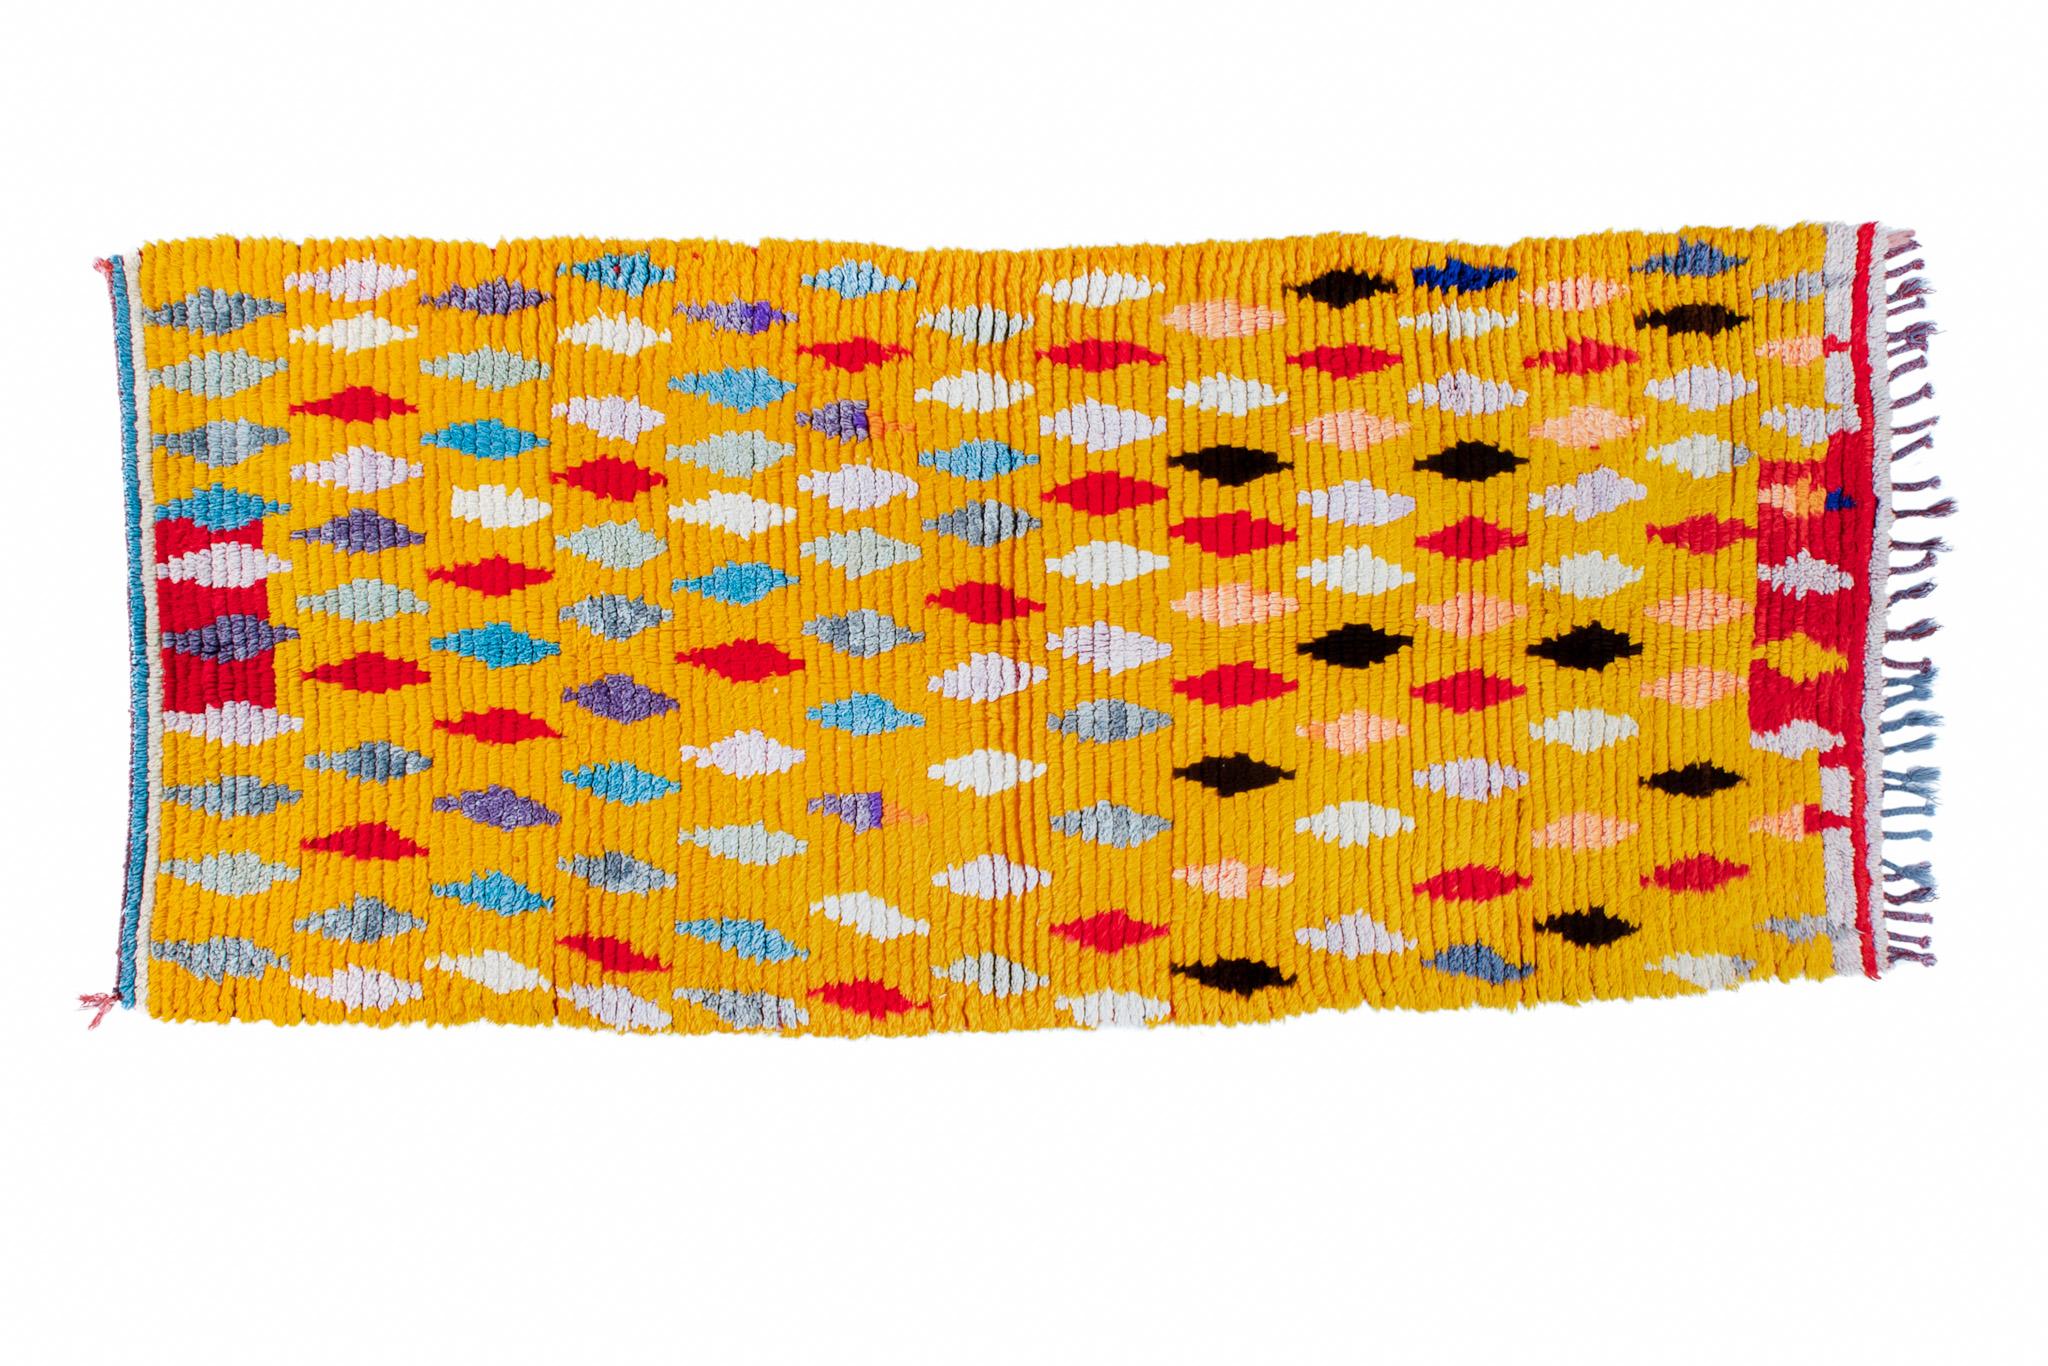 Boucharouite-Teppiche werden aus mehrfarbigen Stoffstücken hergestellt. Dies ist der authentischste recycelte Teppich, den Sie je gesehen haben! Die Abmessungen: 3,4'х8' / 249x104 cm.

Boucharouite - ist die alte manuelle Technik des Bindens und